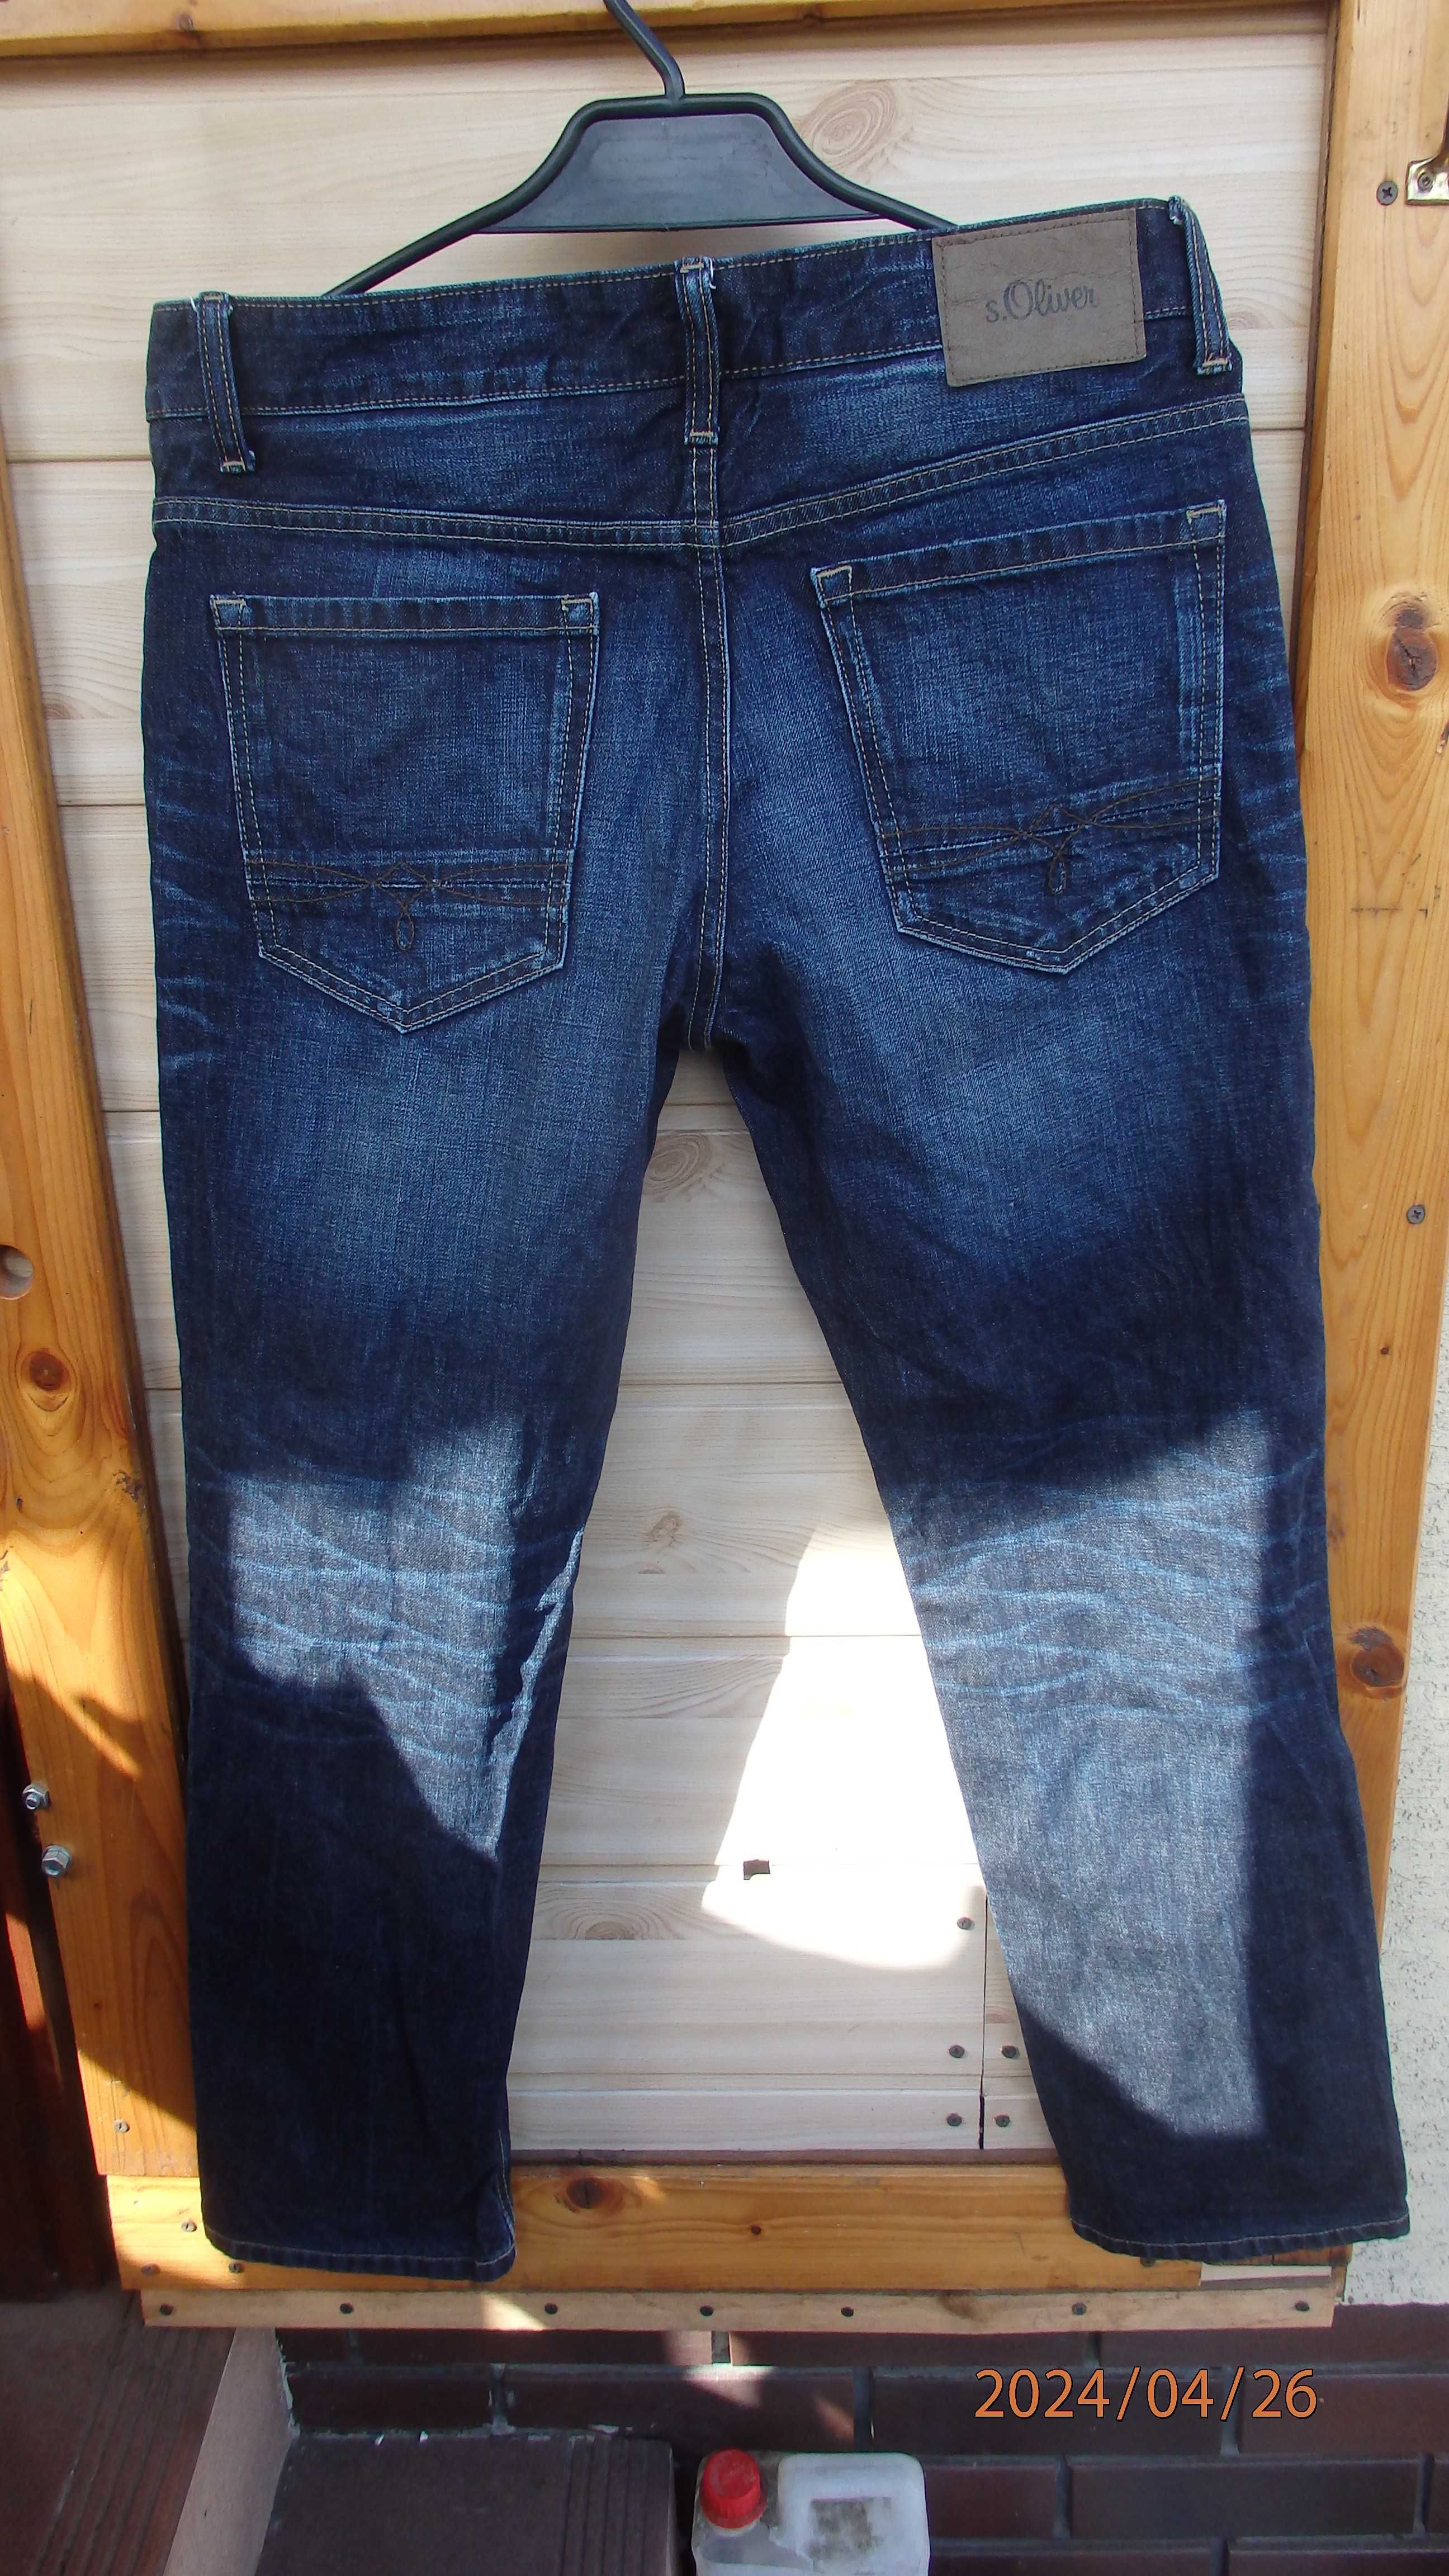 Spodnie męskie jeansowe firmy s. Oliver rozmiar 31/30